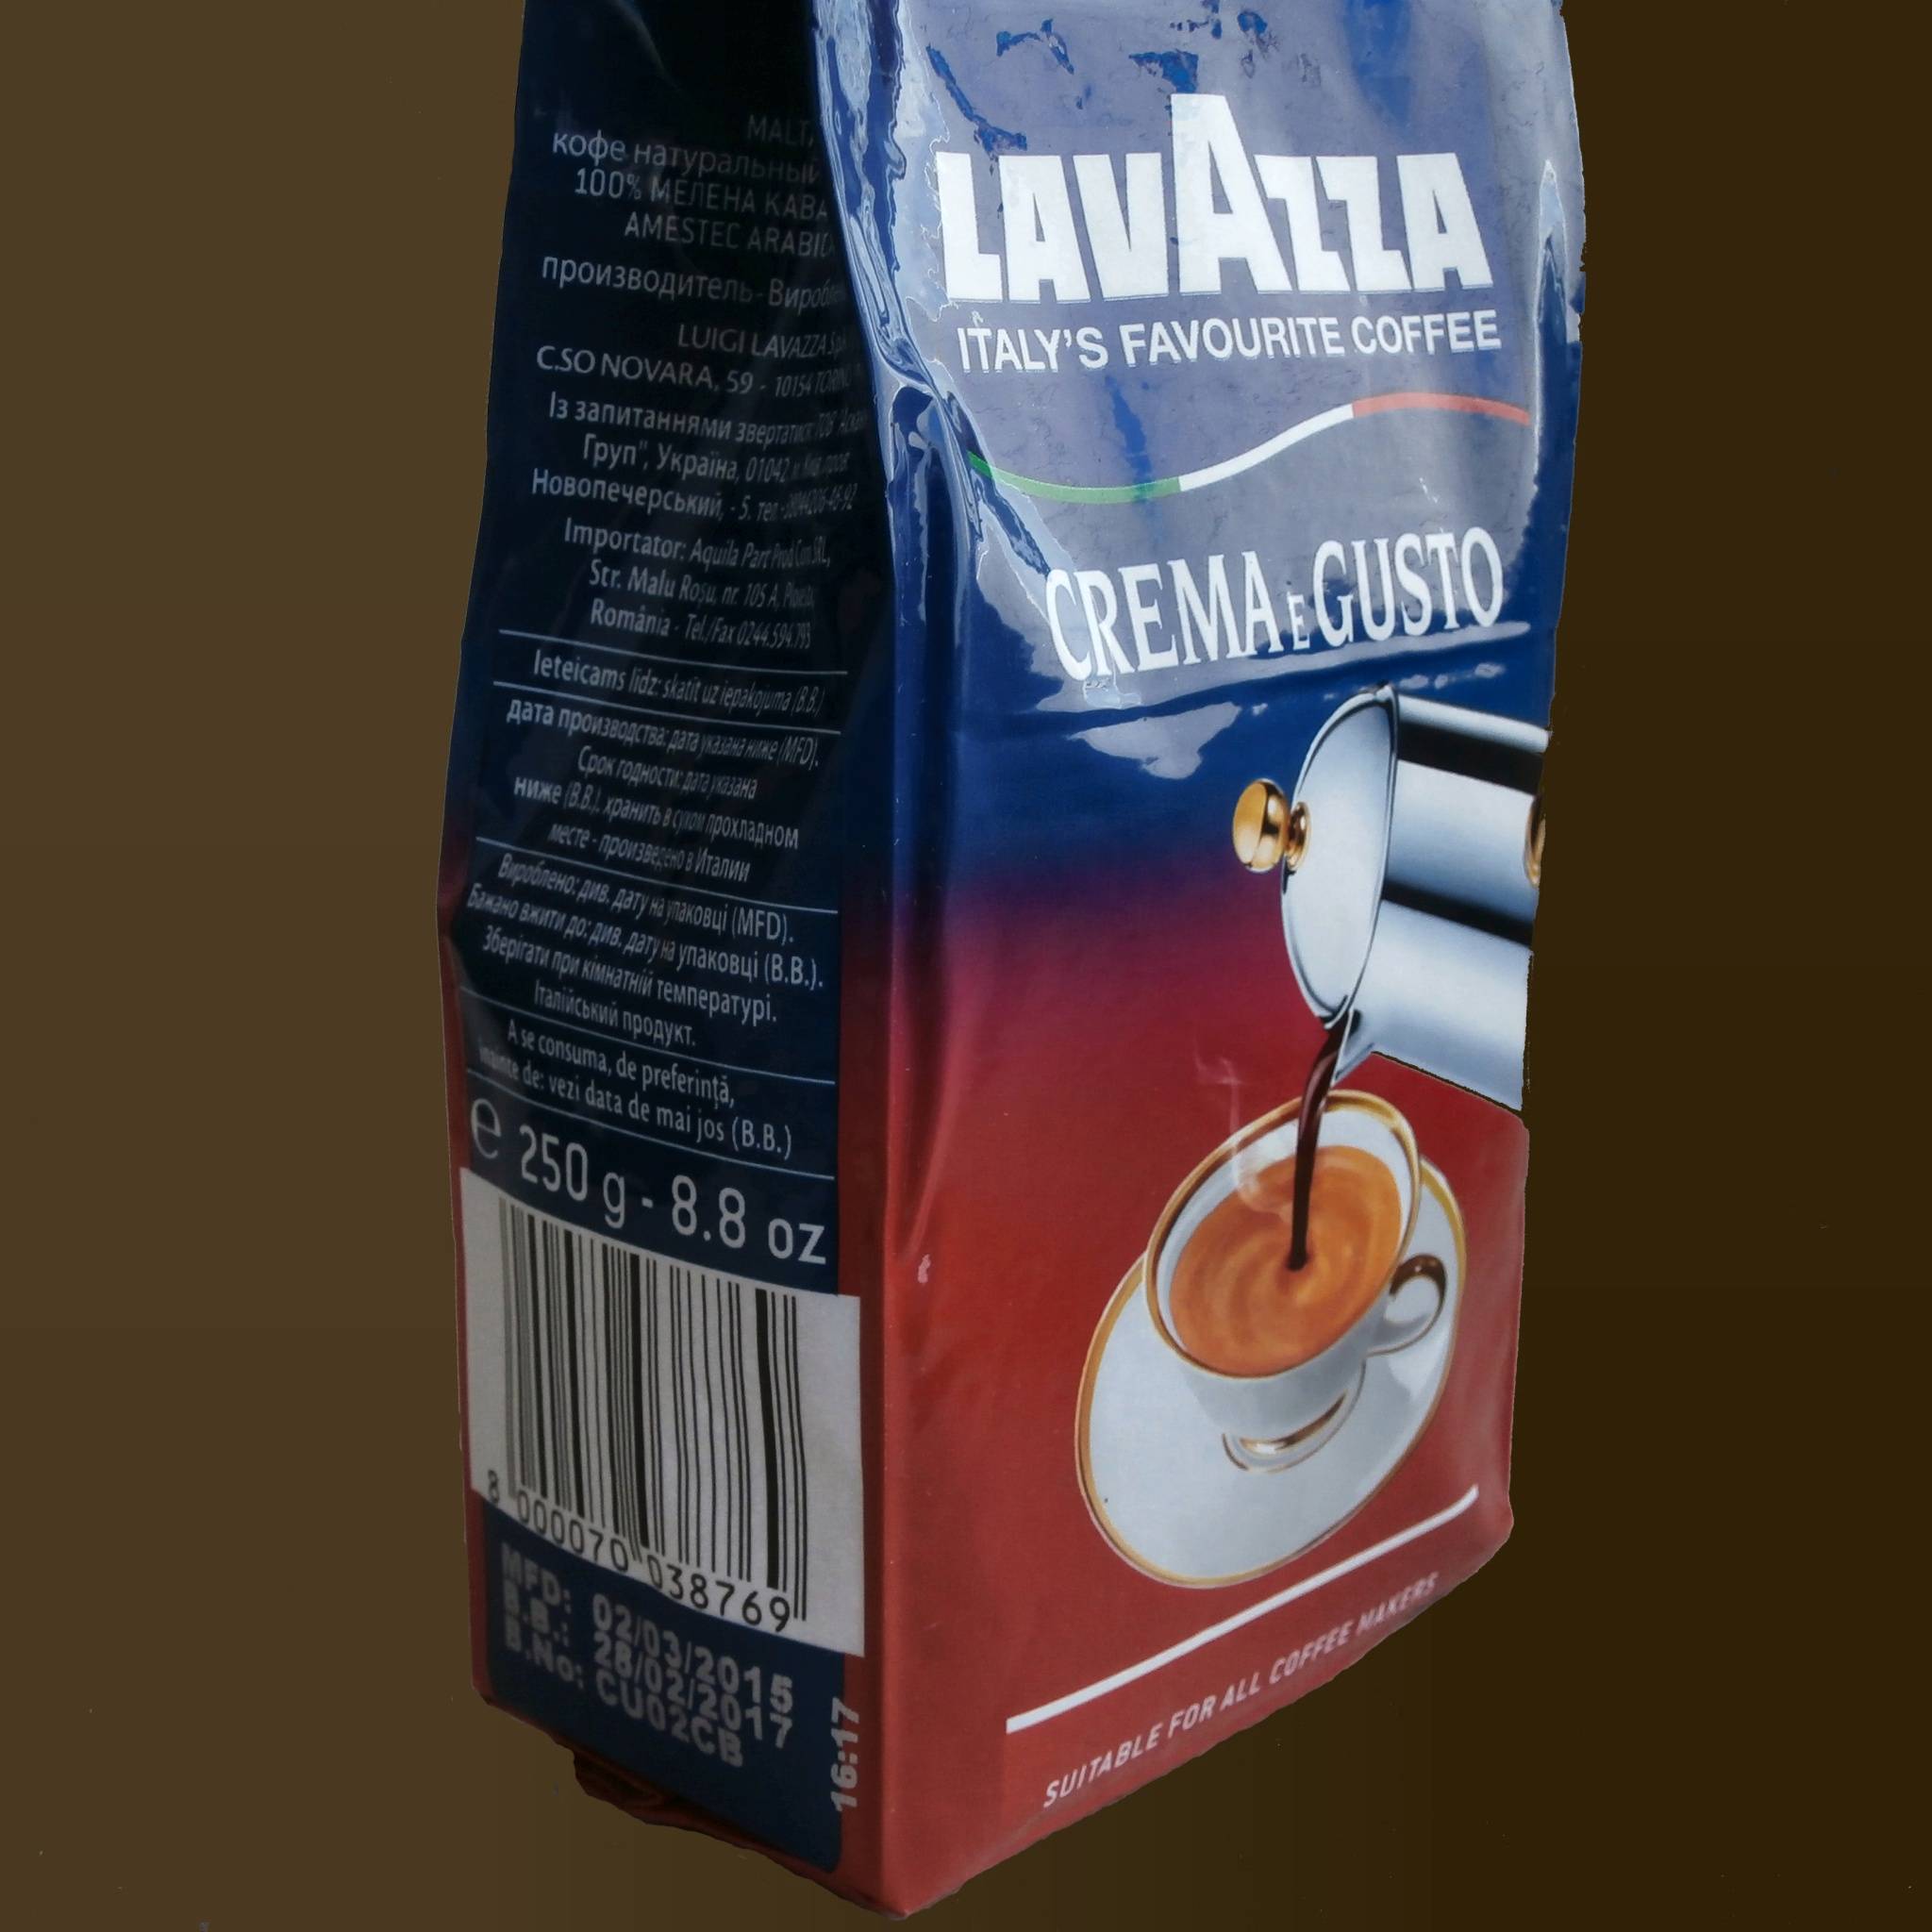 Кофе лавацца (lavazza): виды, описание и цена на российском рынке